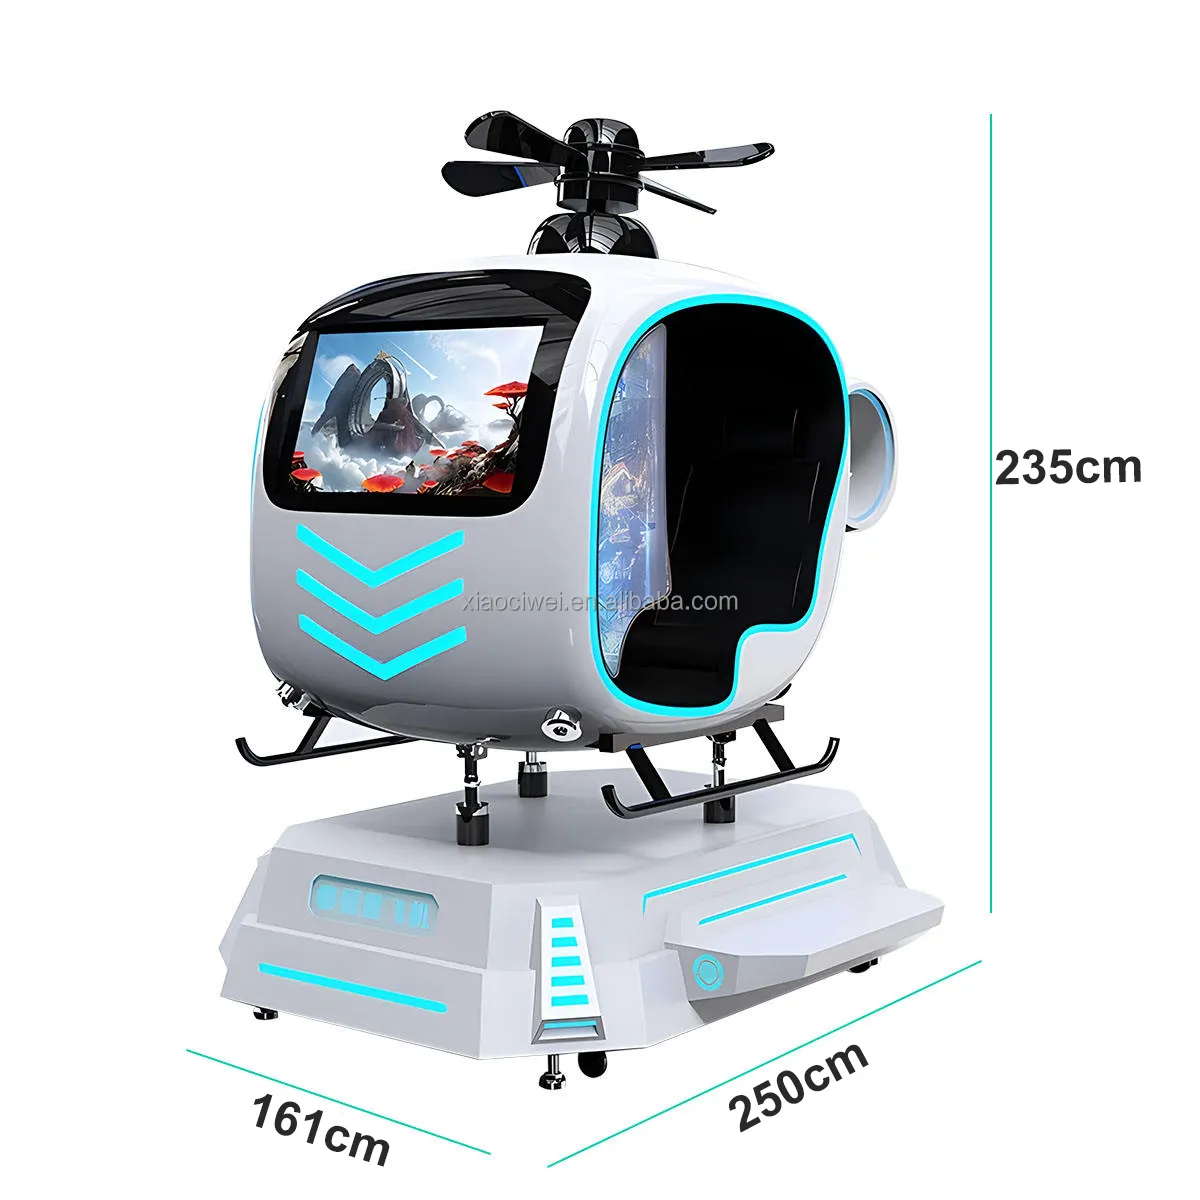 Eğlence Arcade sanal gerçeklik uçan simülatörlü oyun makinesi VR helikopter 9D uçuş VR uçak